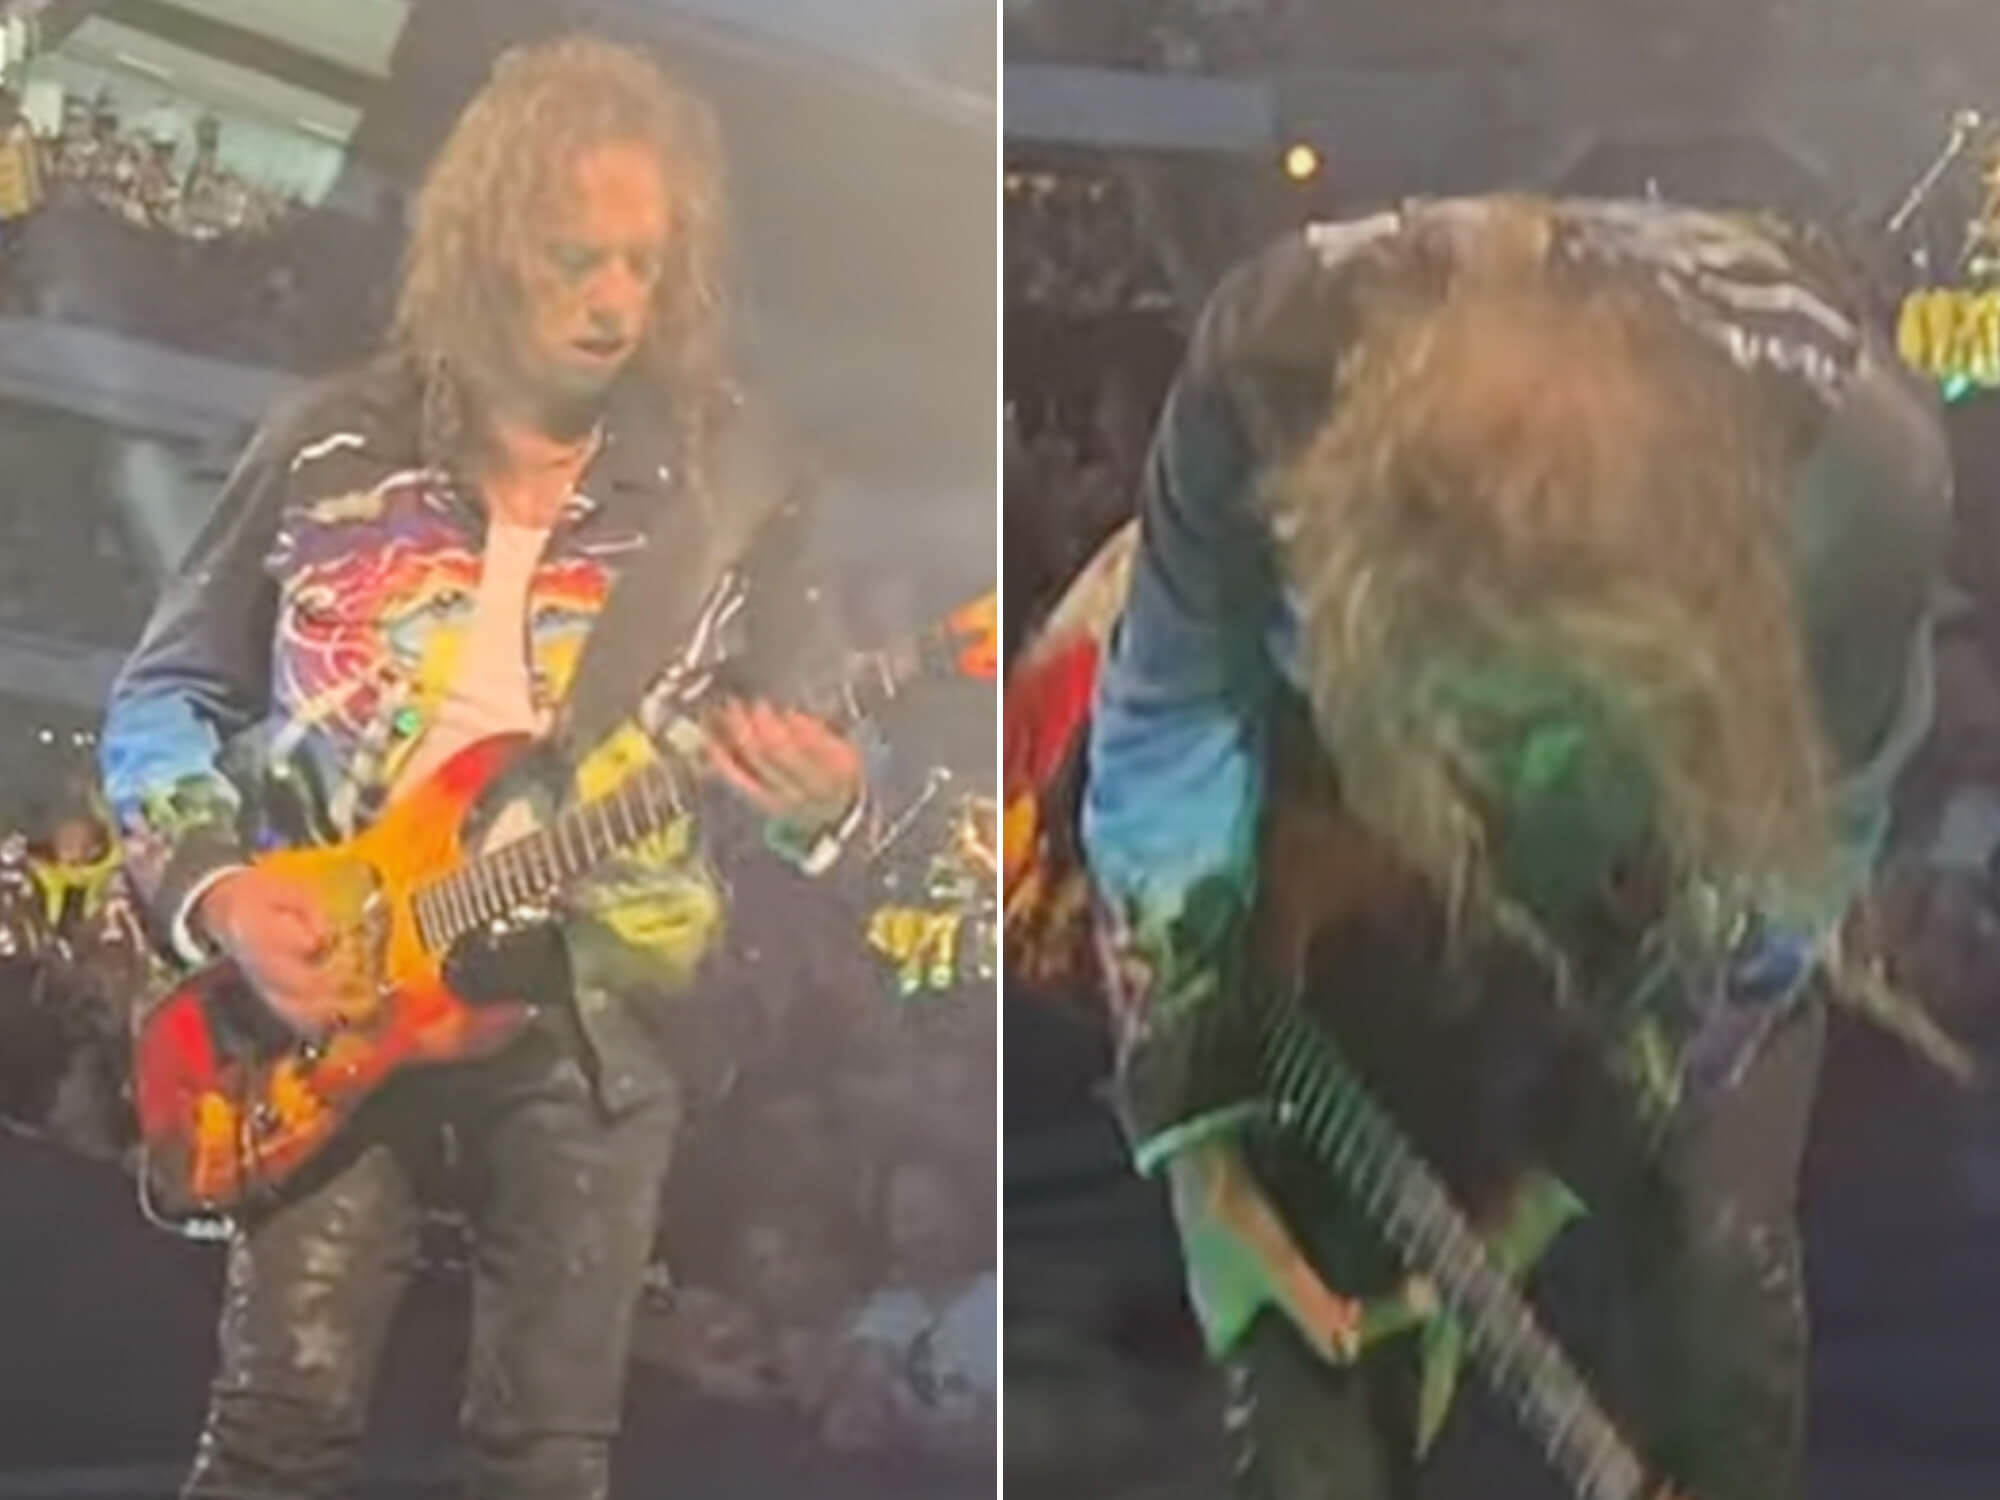 Kirk Hammett performs onstage in Gothenburg, Sweden